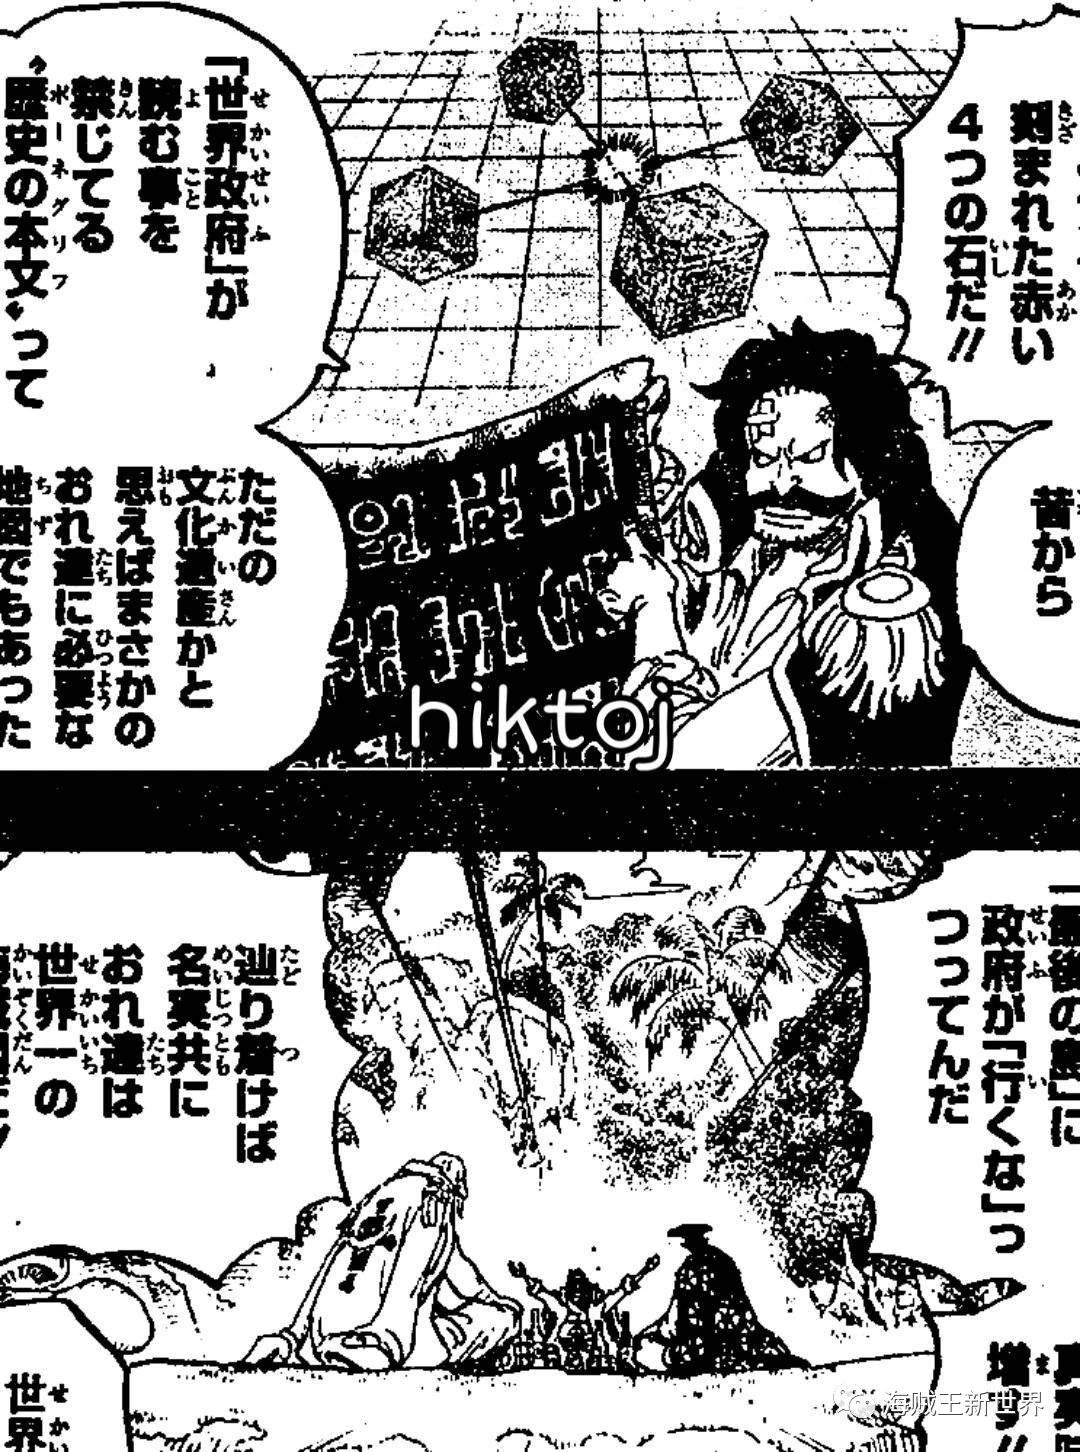 海贼王漫画966话情报:罗杰vs白胡子 世界第一海贼团!